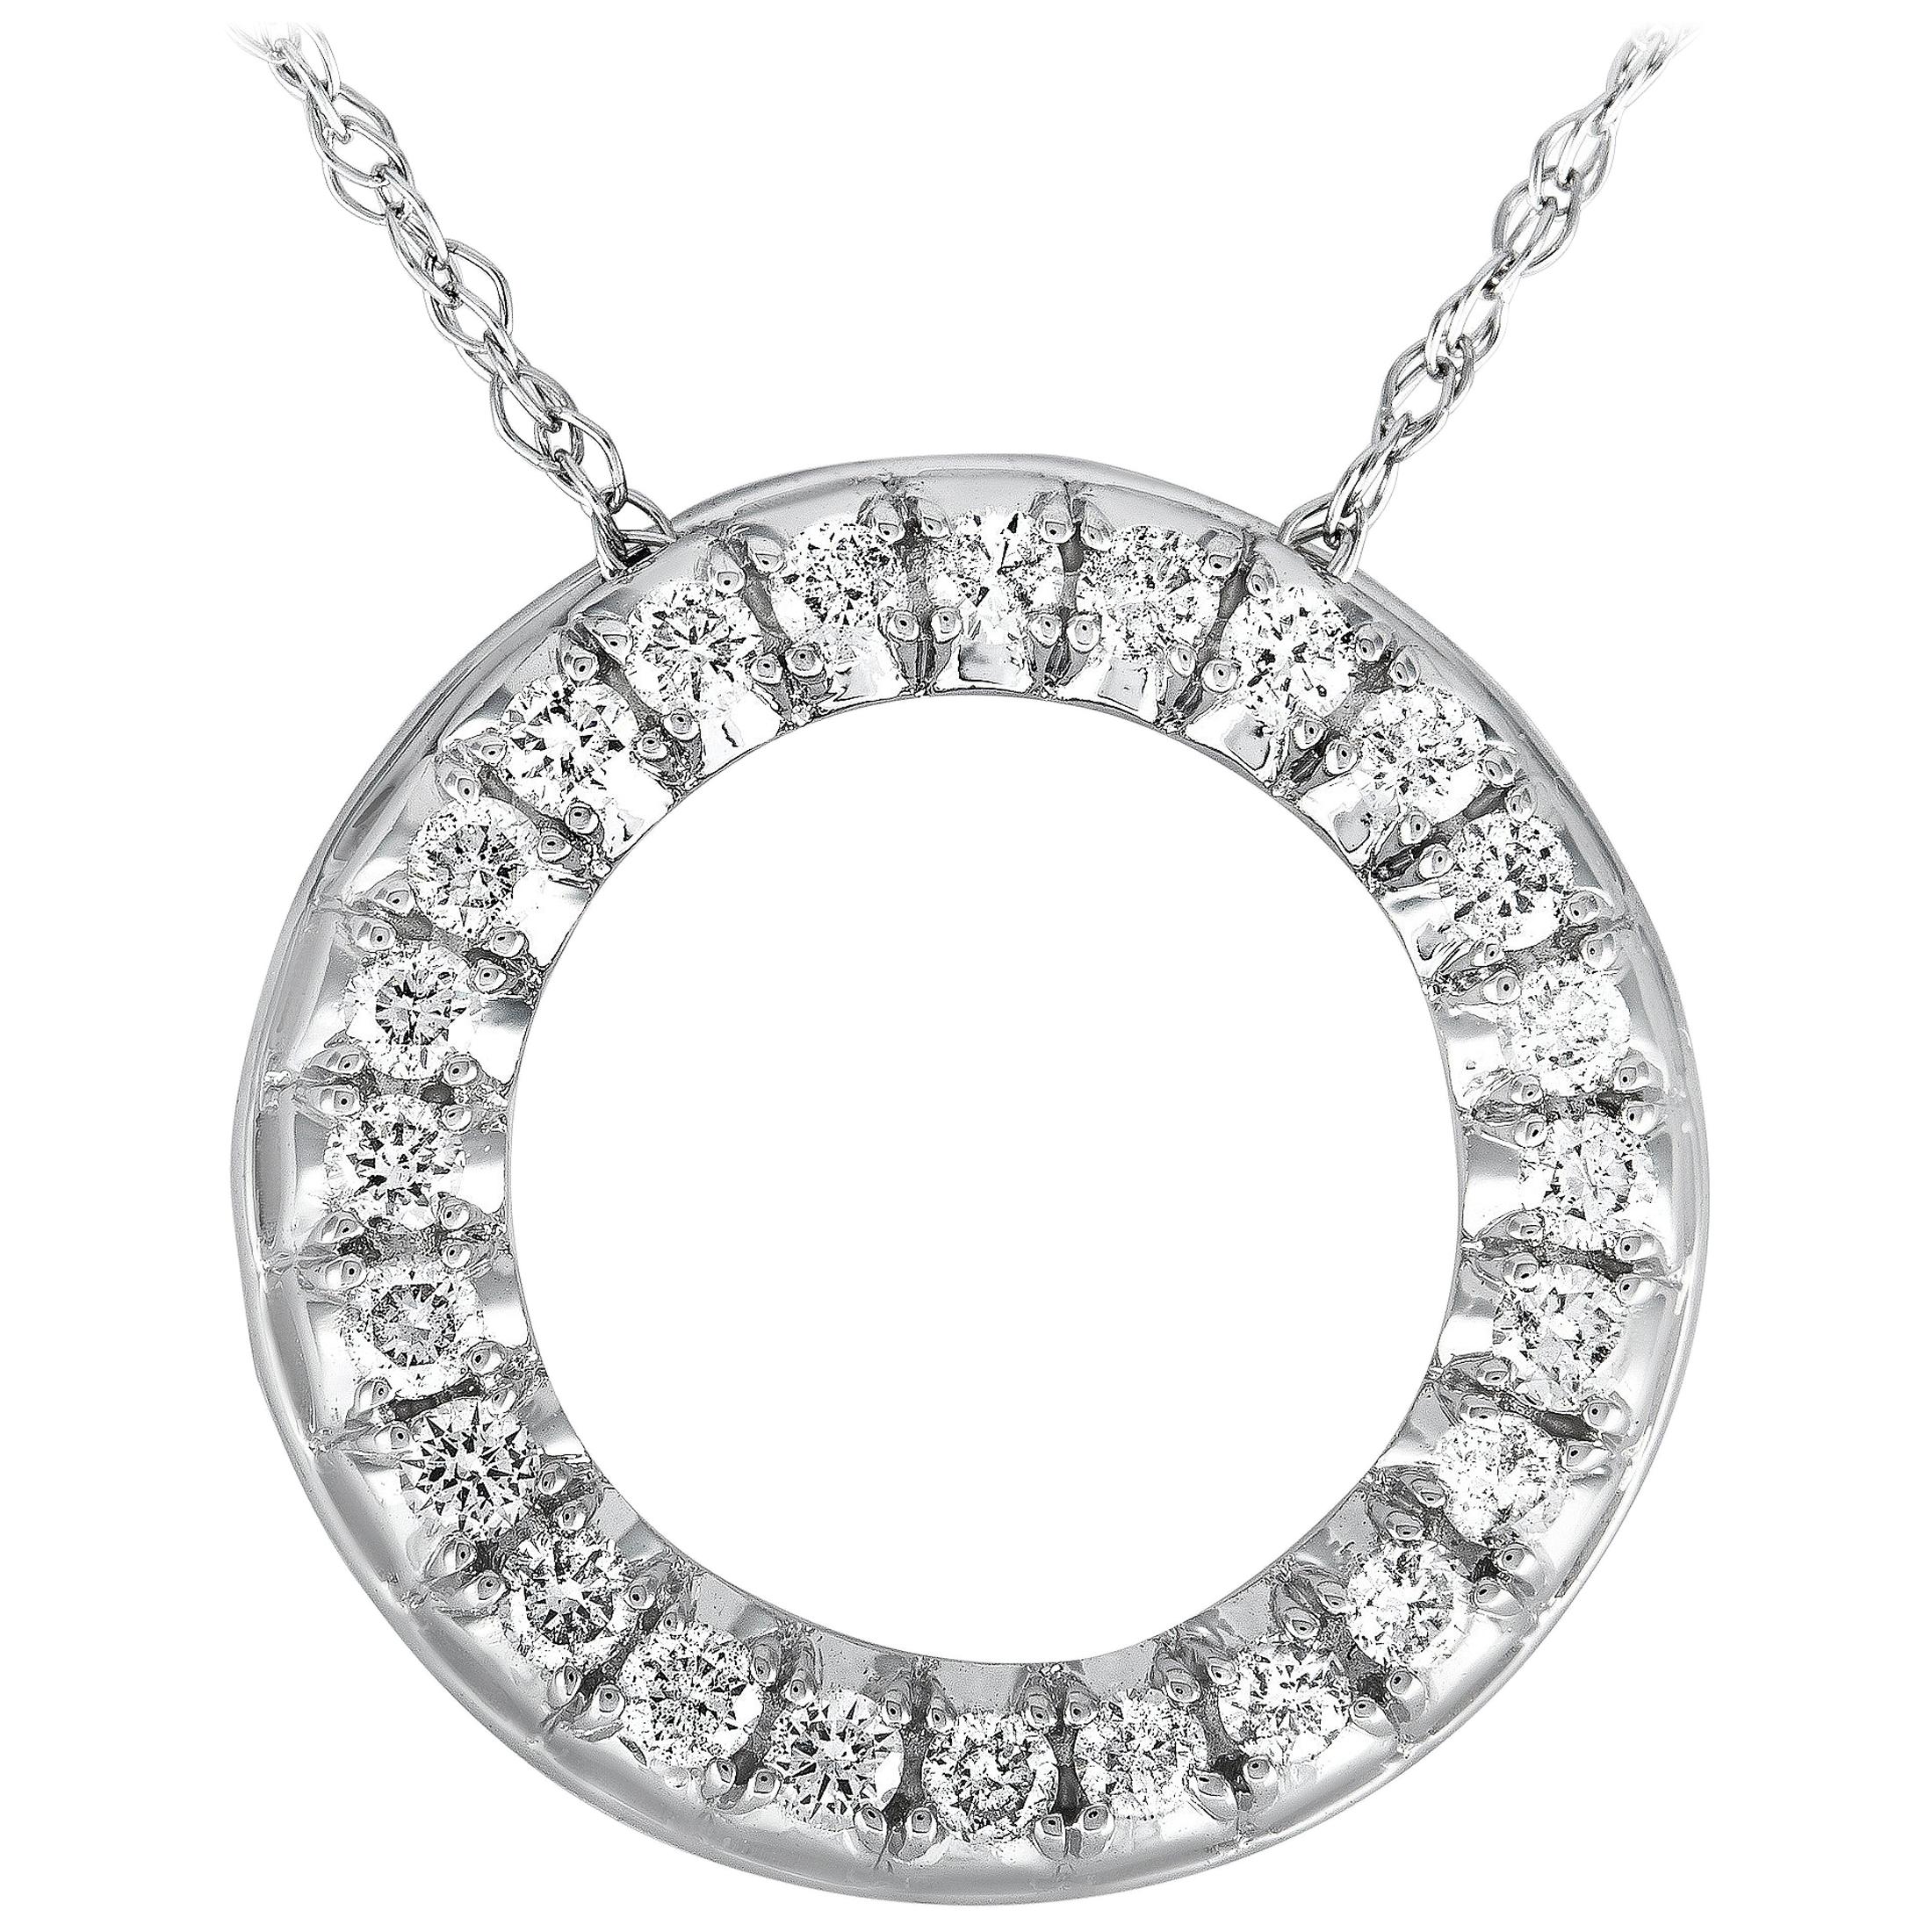 LB Exclusive White Gold .50 Carat VS1 G Color Diamond Pave Pendant Necklace